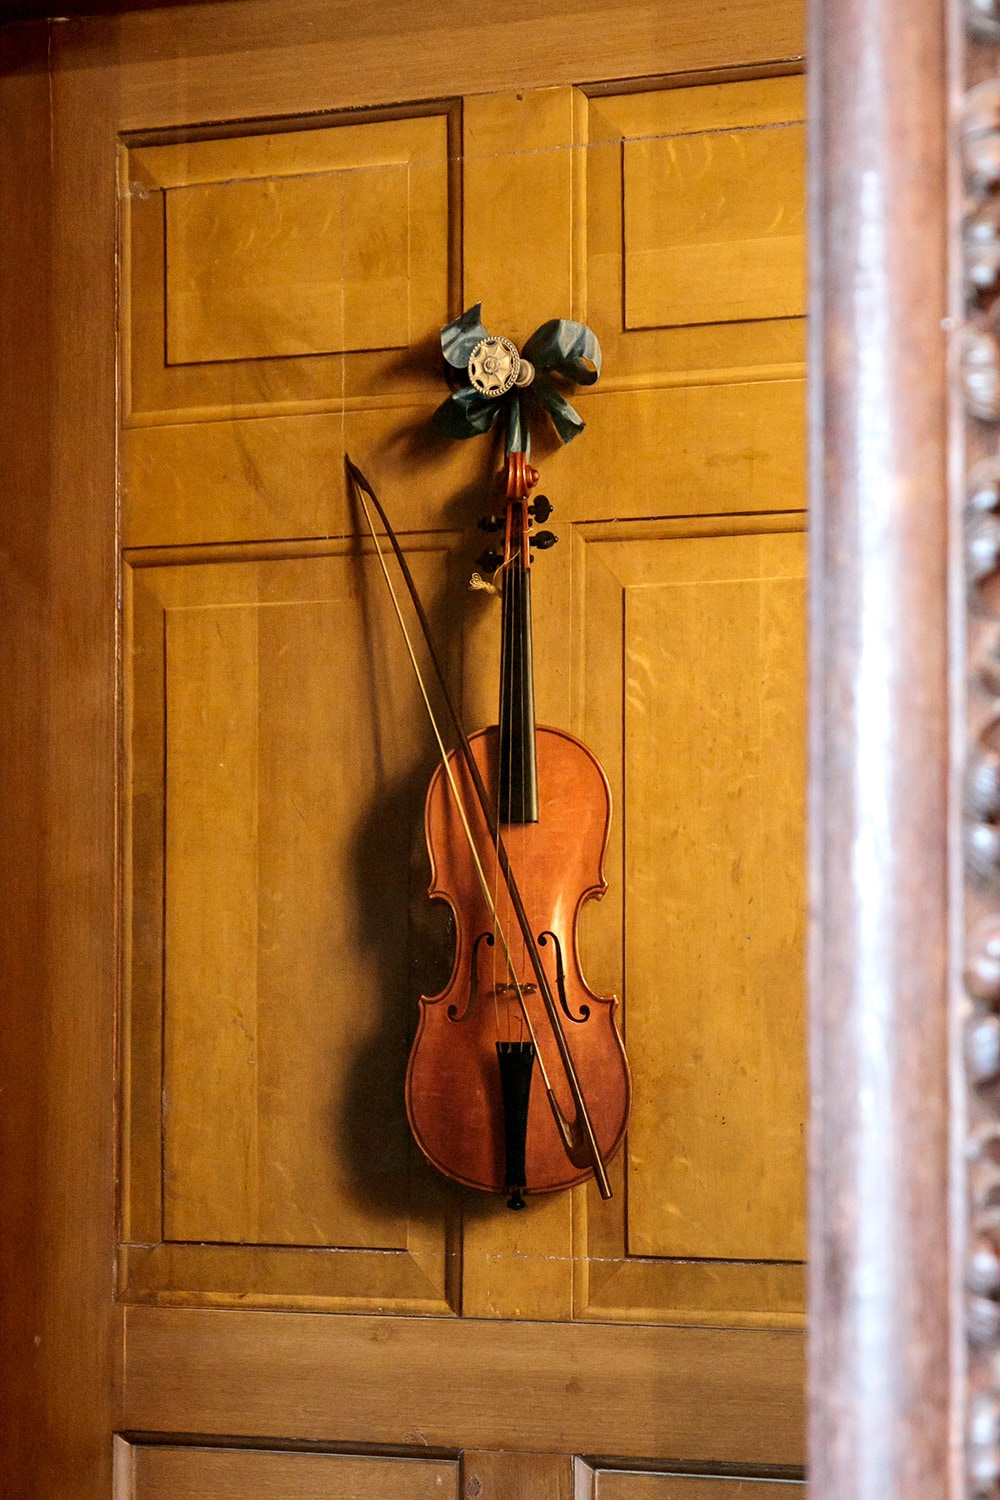 【弾けそうで弾けない!? だまし絵のバイオリン】国王が訪れた際に滞在するステート・アパートメントには、ステート・ミュージック・ルームと名づけられた部屋があり、奥にバイオリンが掛けられたドアが見える。ドアの木目から楽器の落とす影まで、本物そのものだが、実はトロンプ・ルイユ(だまし絵)。ドアの下半分は本物のドアだが、上半分はドアも含め、画家の手で描かれたものだ。ヤン・ファン・デル・ファールト 《ドアに掛けられたバイオリンと弓のトロンプ・ルイユ》1723年制作。